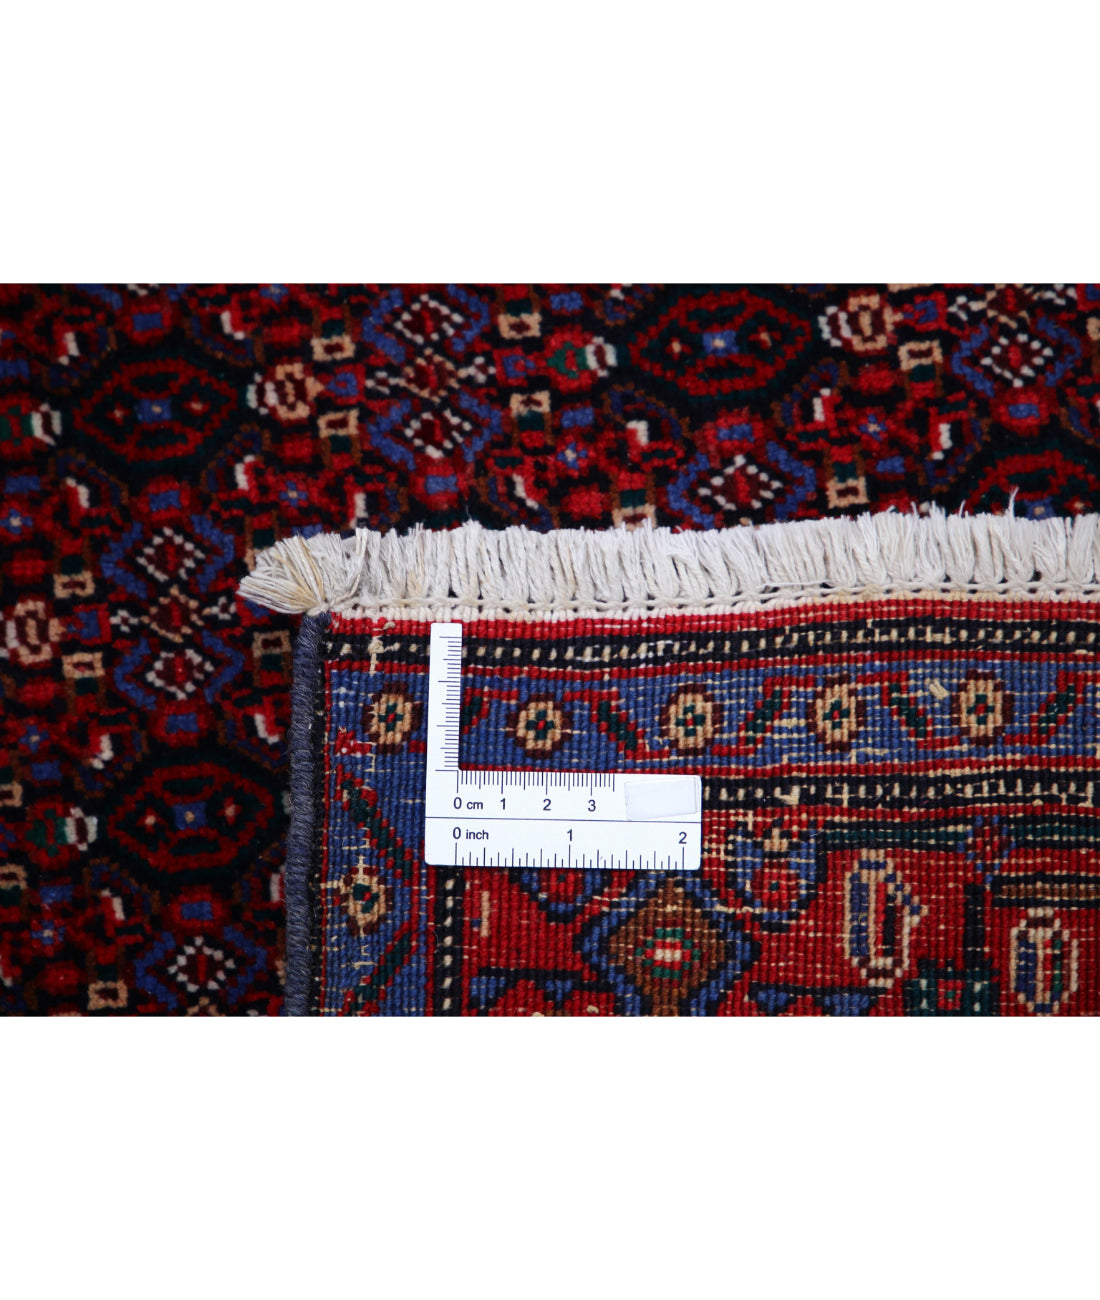 Bijar 6'8'' X 10'11'' Hand-Knotted Wool Rug 6'8'' x 10'11'' (200 X 328) / Blue / Red